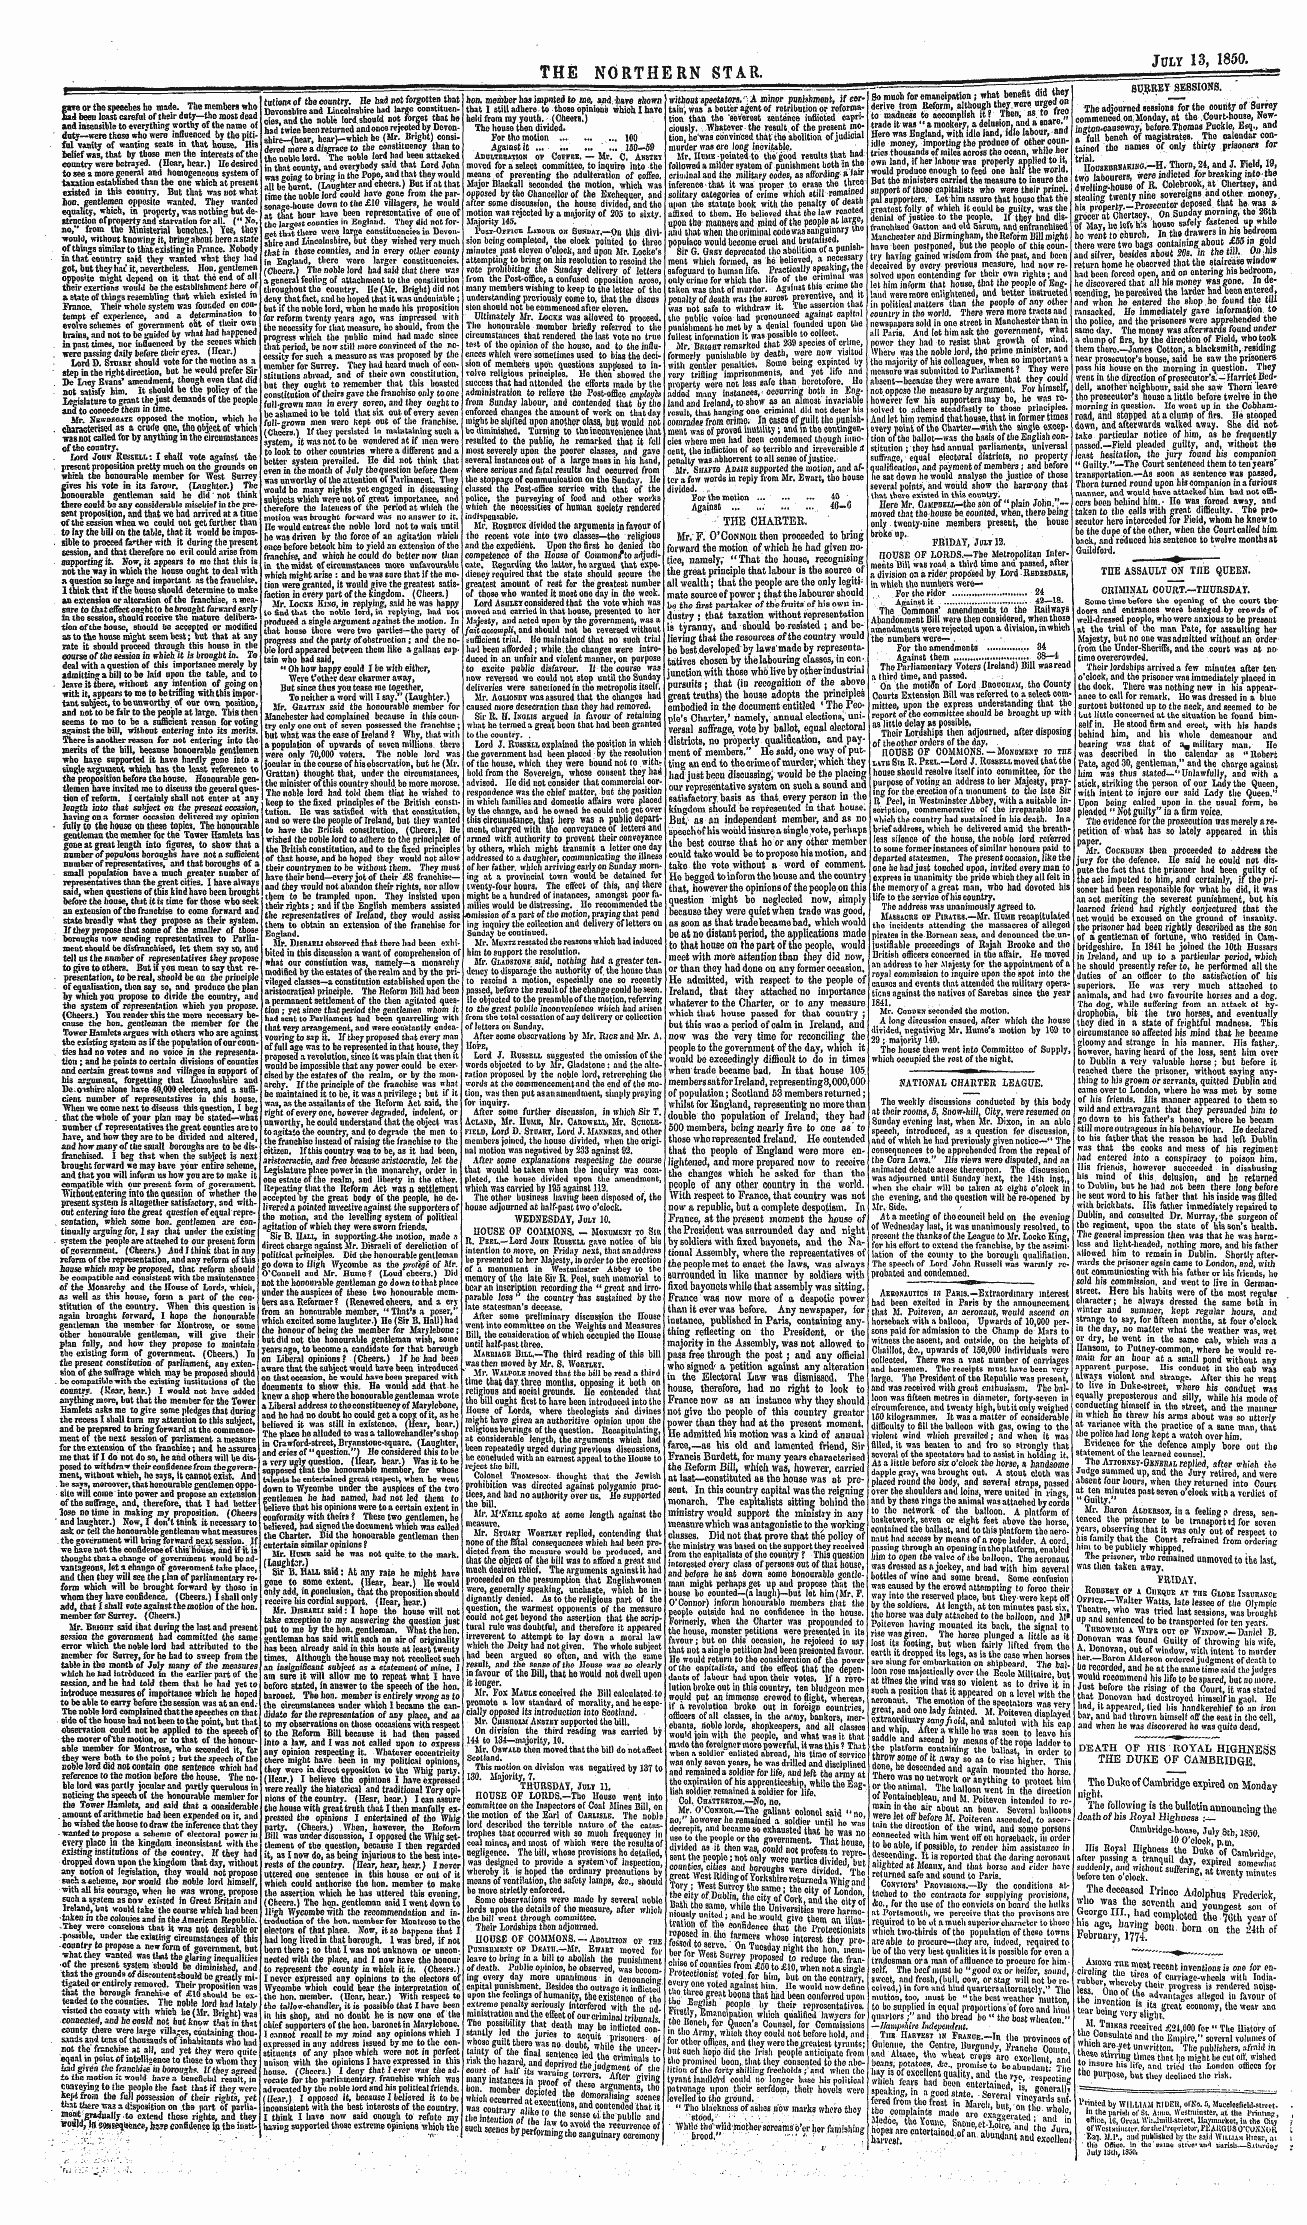 Northern Star (1837-1852): jS F Y, 3rd edition - Aebonautics In Paris.—Extraordinary Inte...